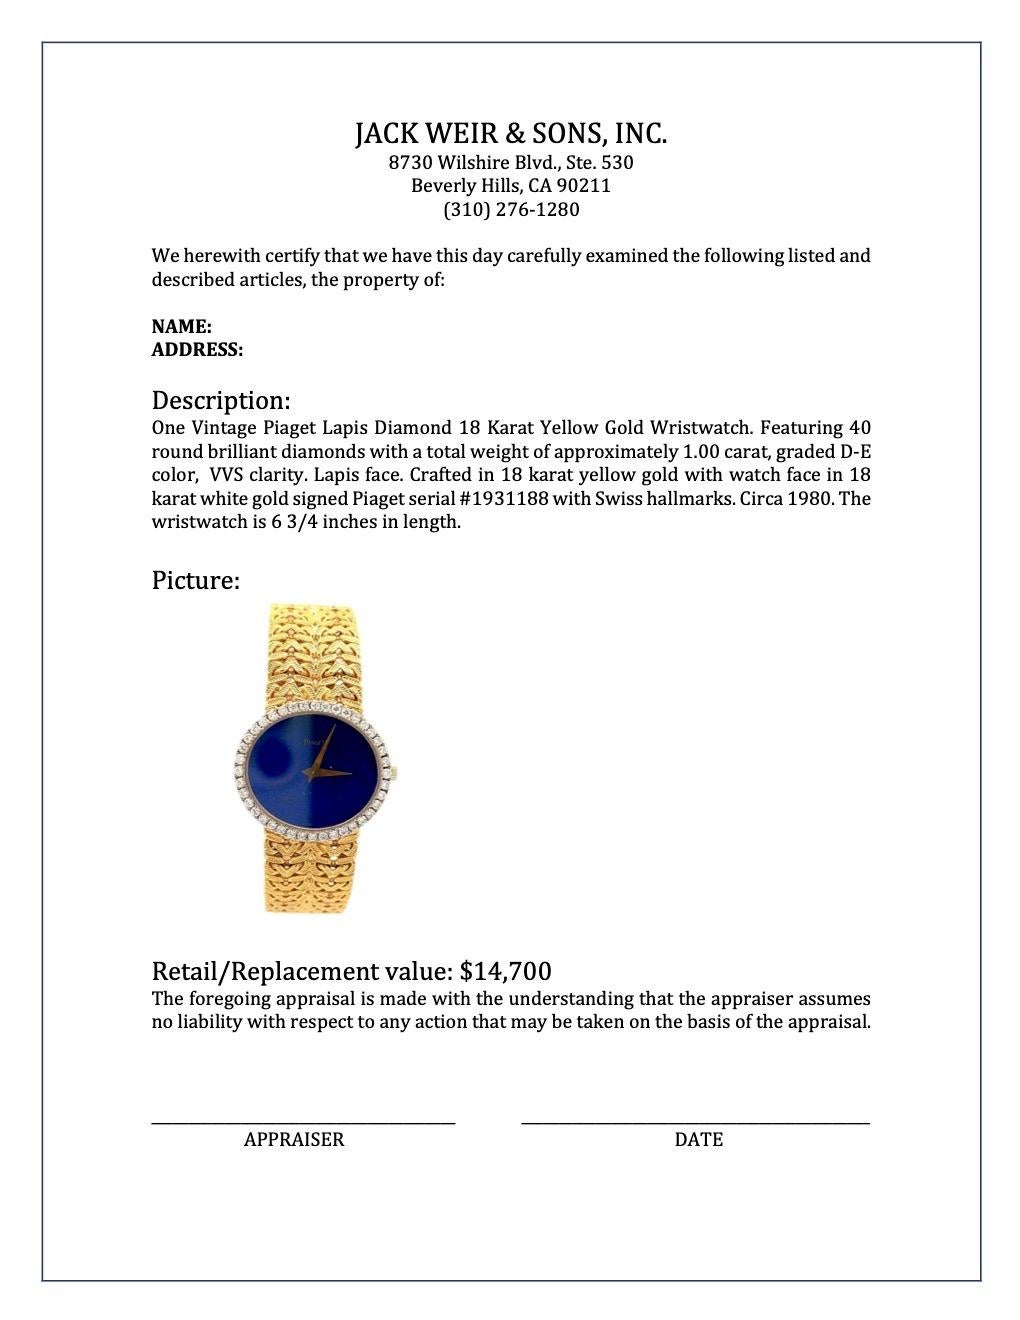 Vintage Piaget Lapis Diamond 18 Karat Yellow Gold Wristwatch 2